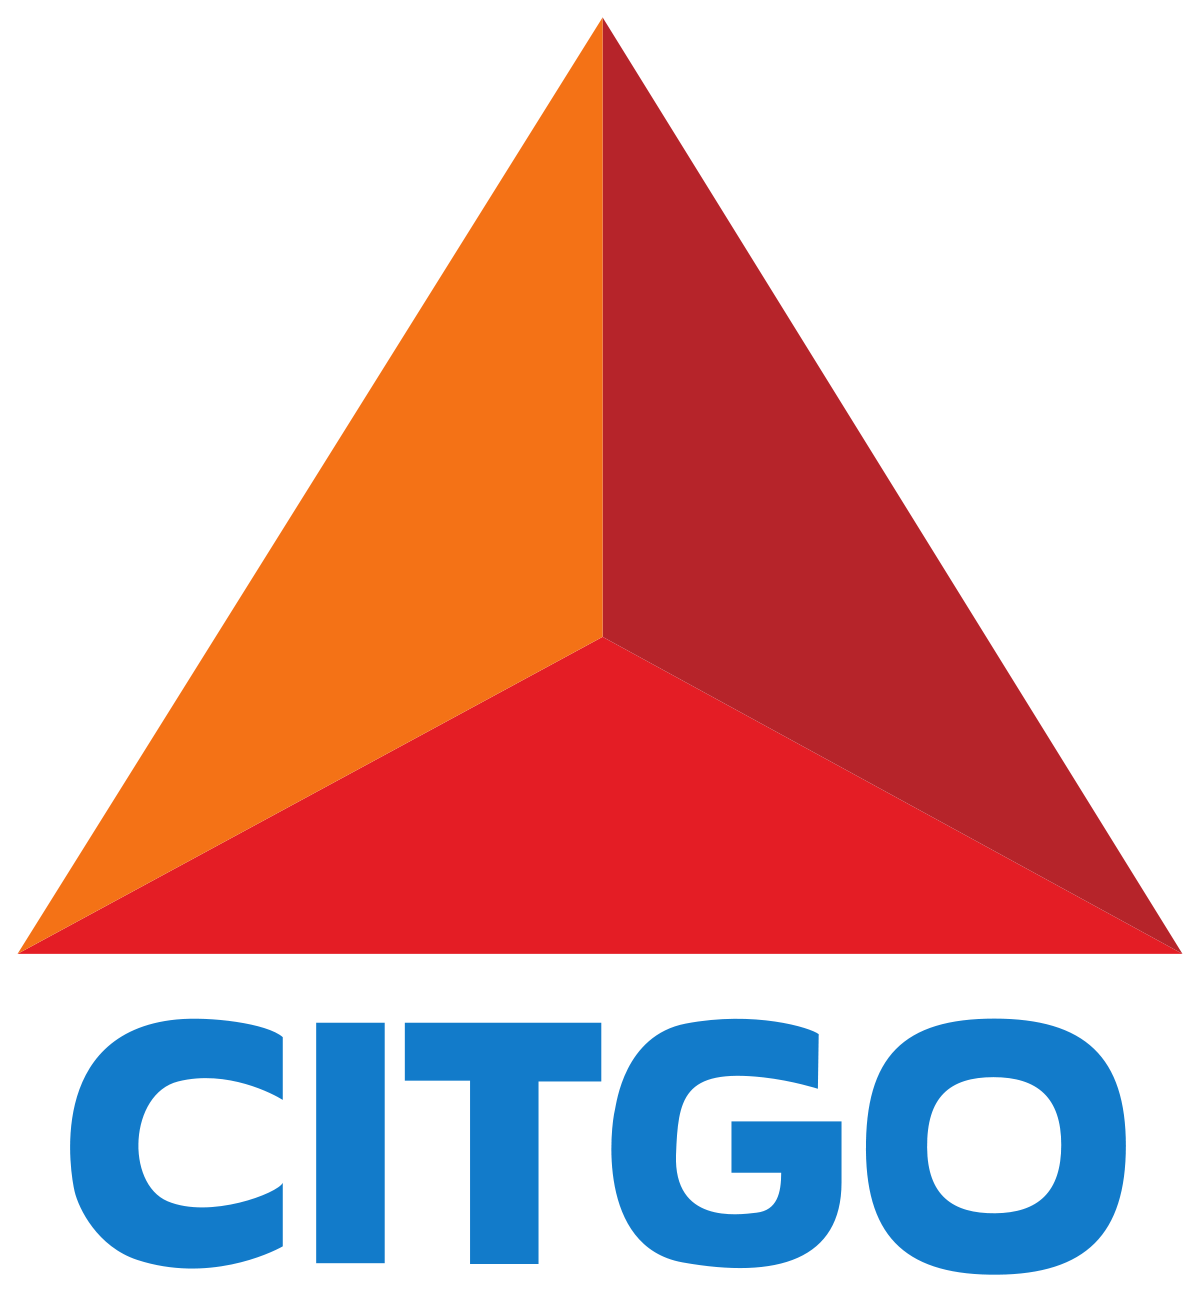 1200px-Citgo_logo.svg.png